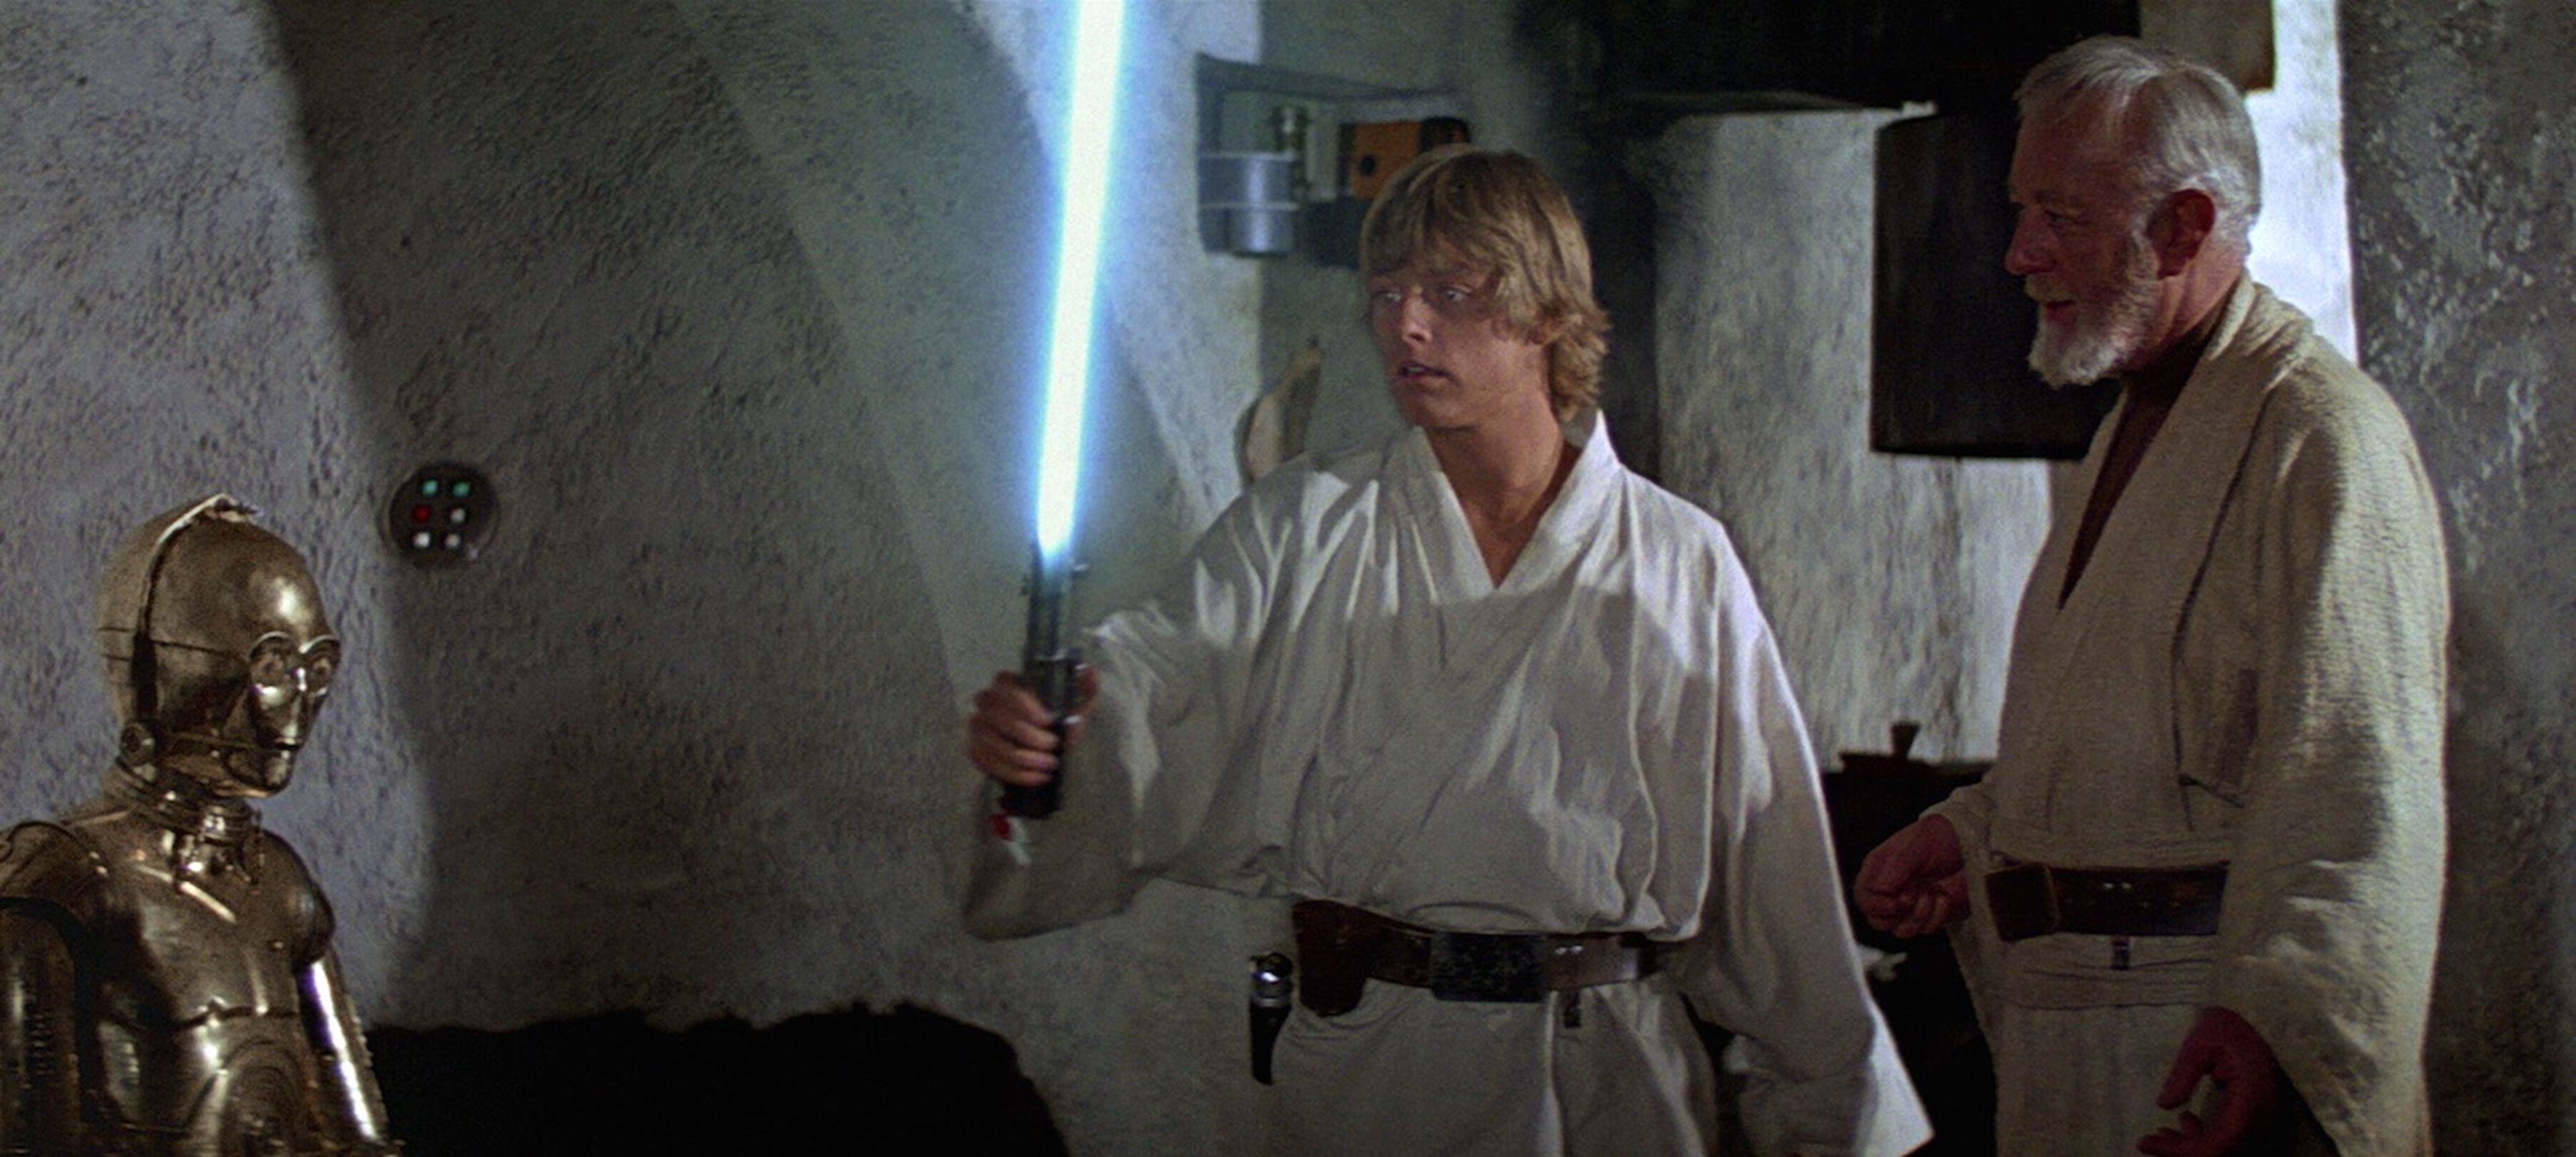 Star Wars episodio IV: Una nueva esperanza - Luke Skywalker - Sable de luz